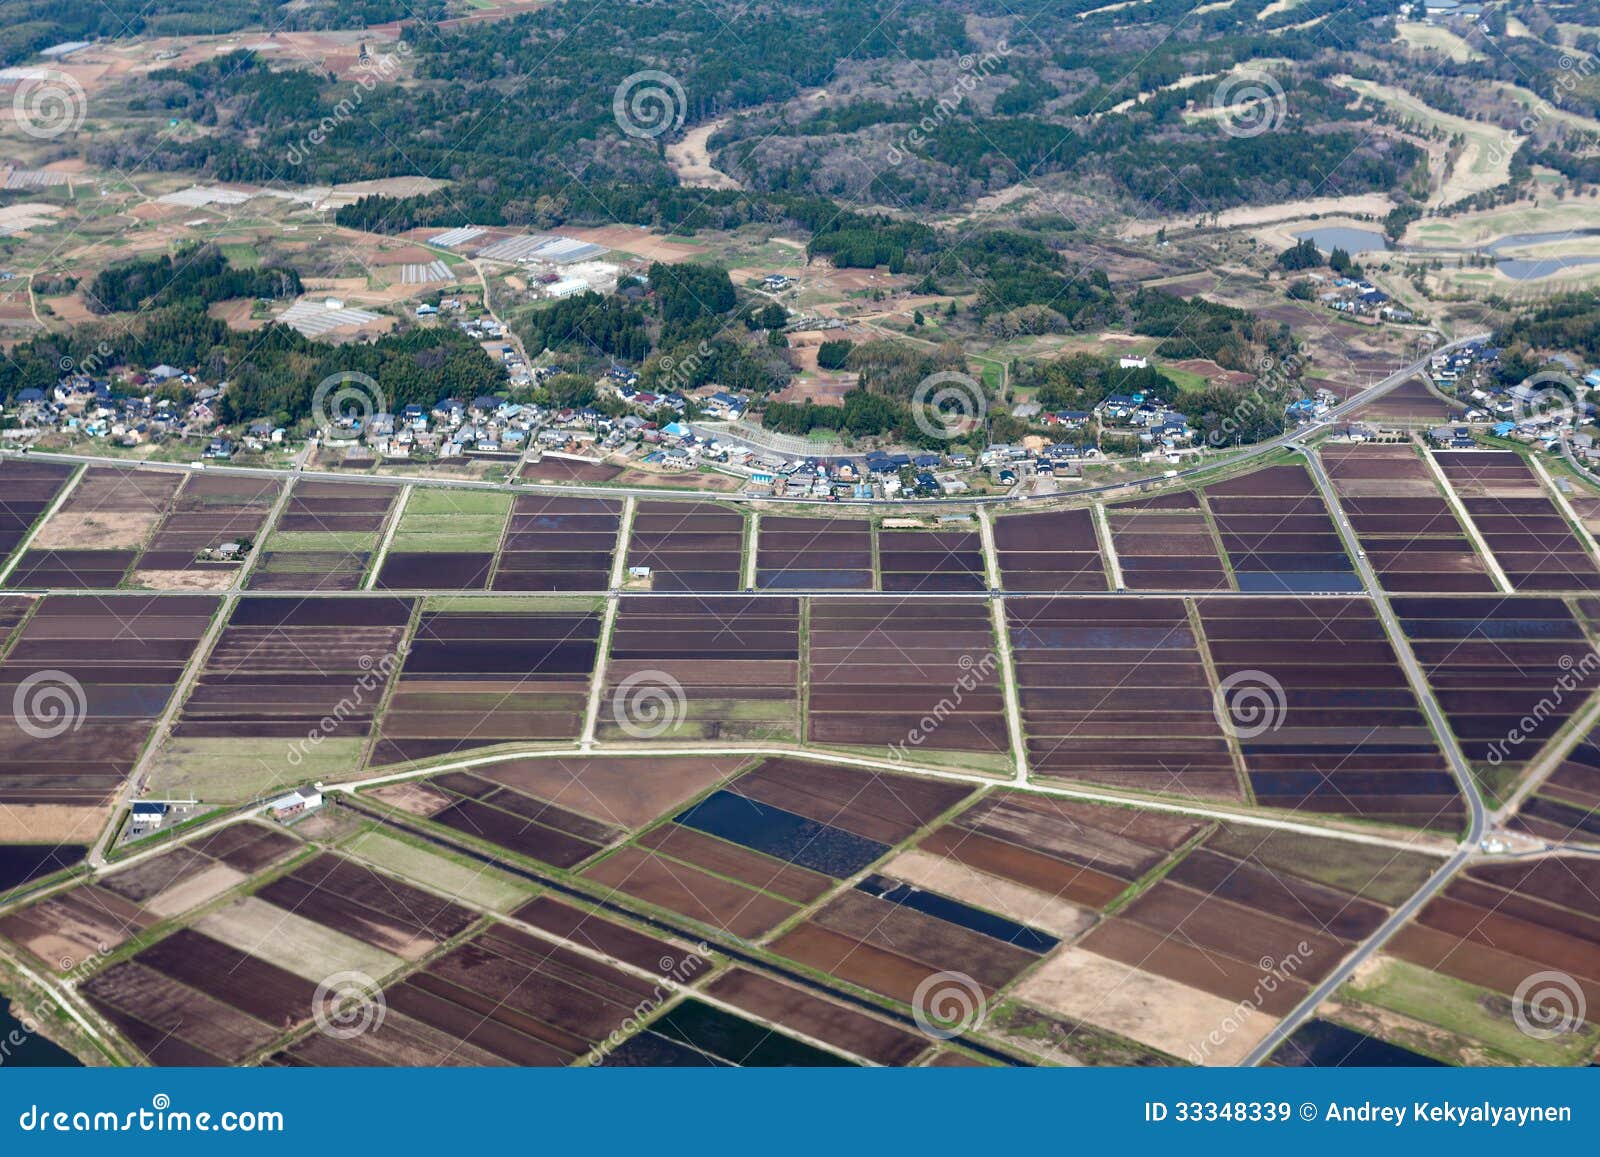 Rijstweiden en gebieden dichtbij klein dorp. Rijstweiden en gebieden dichtbij klein Japans dorp. Luchtmening van vliegtuigen. Japan